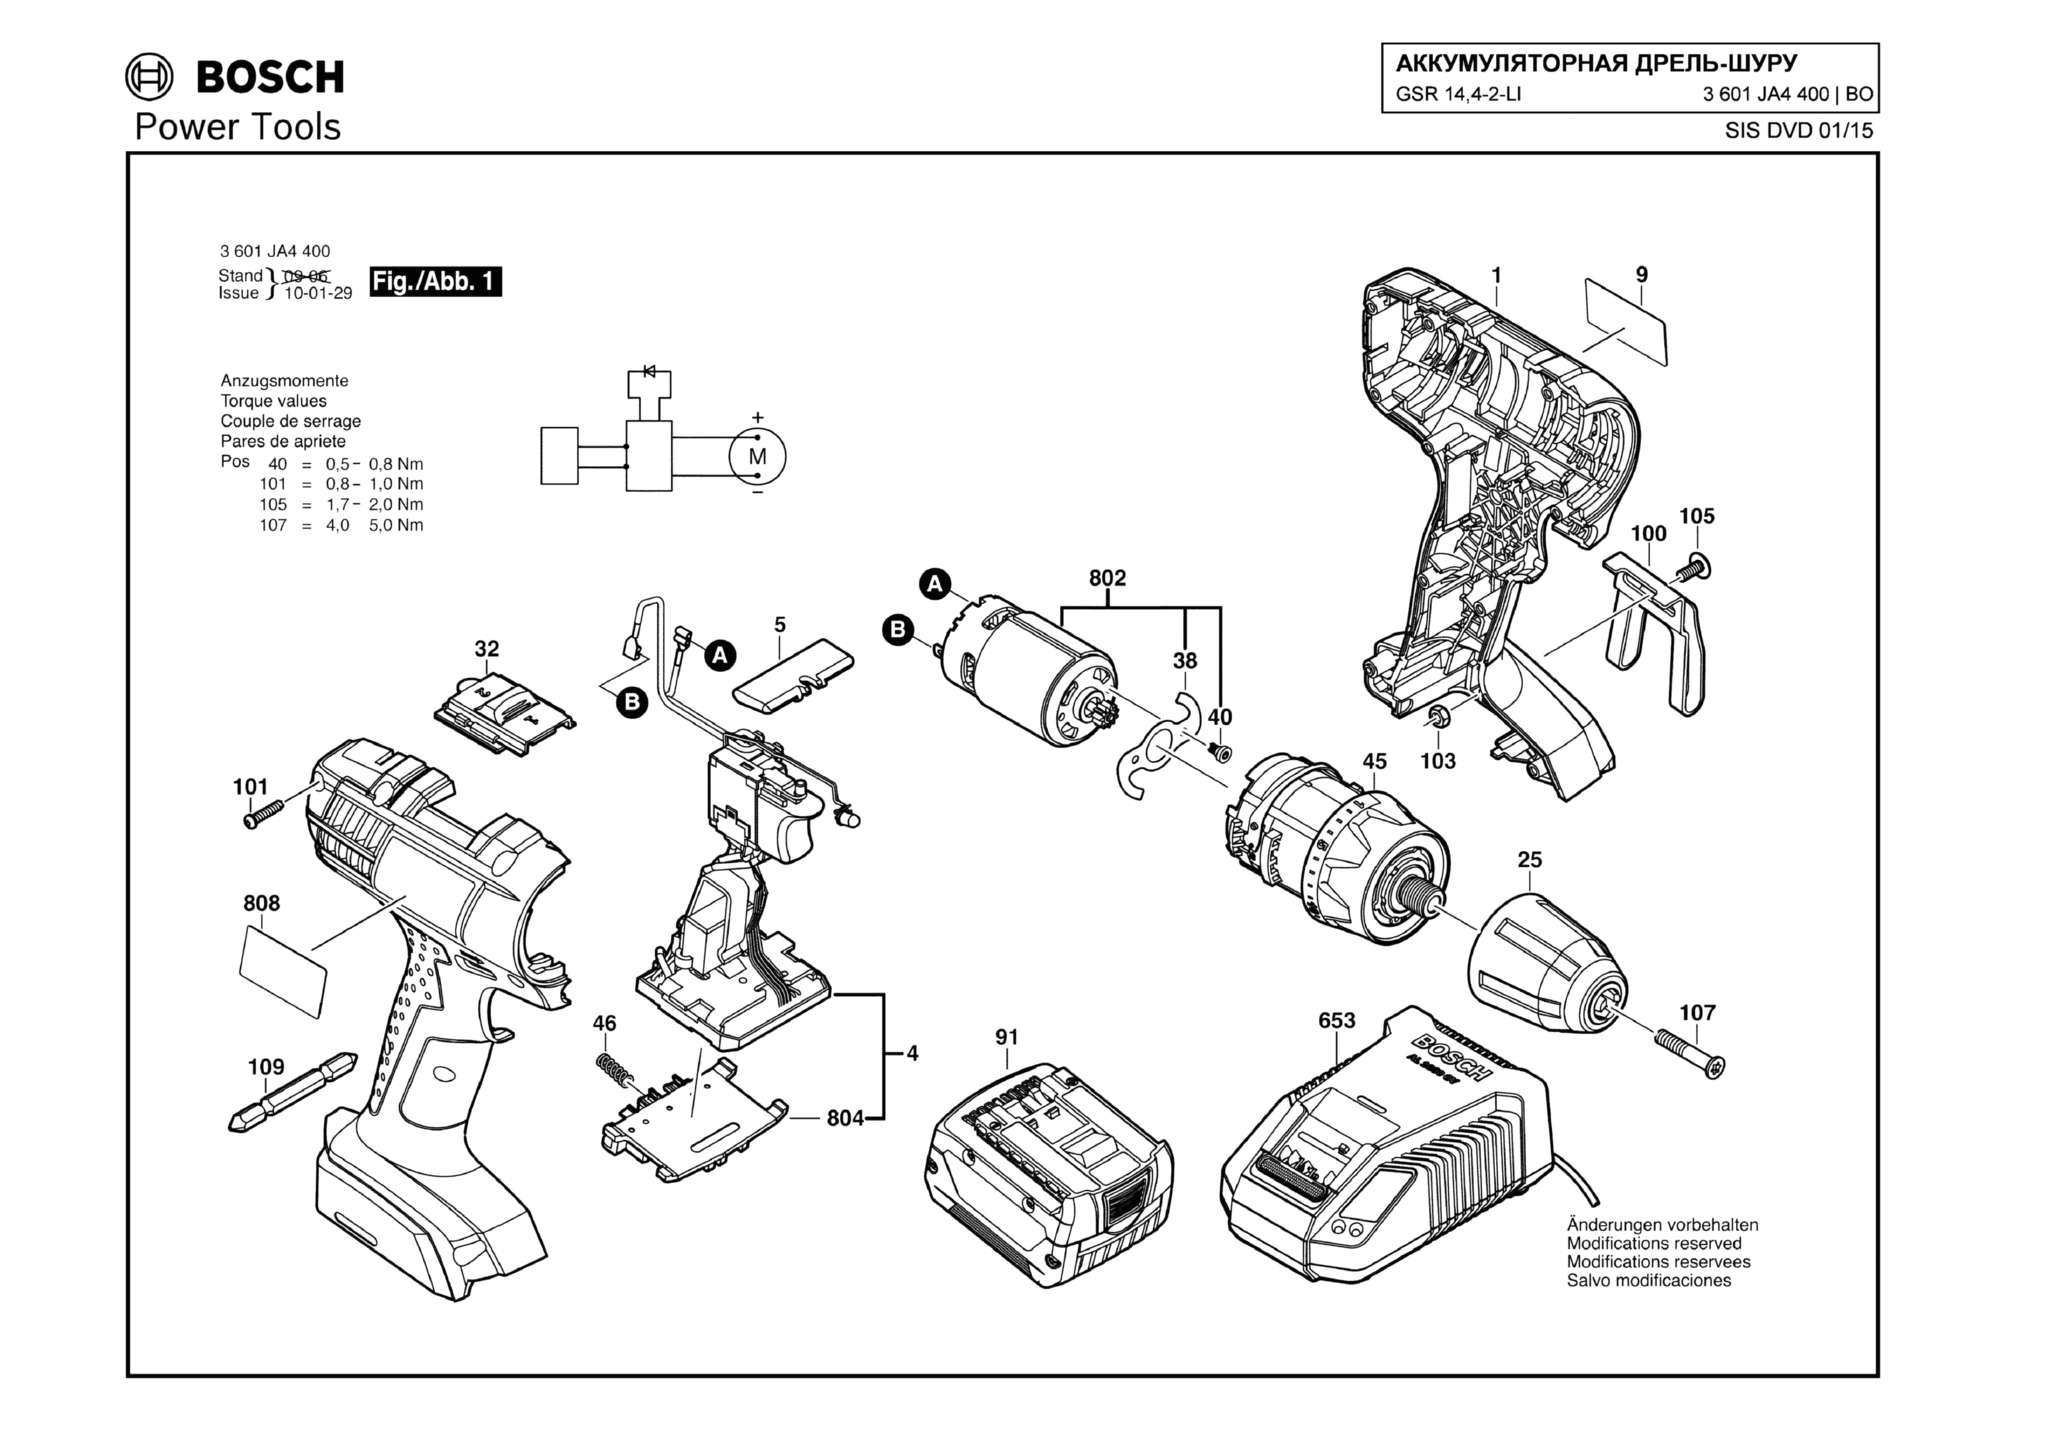 Запчасти, схема и деталировка Bosch GSR 14,4-2-LI (ТИП 3601JA4400)